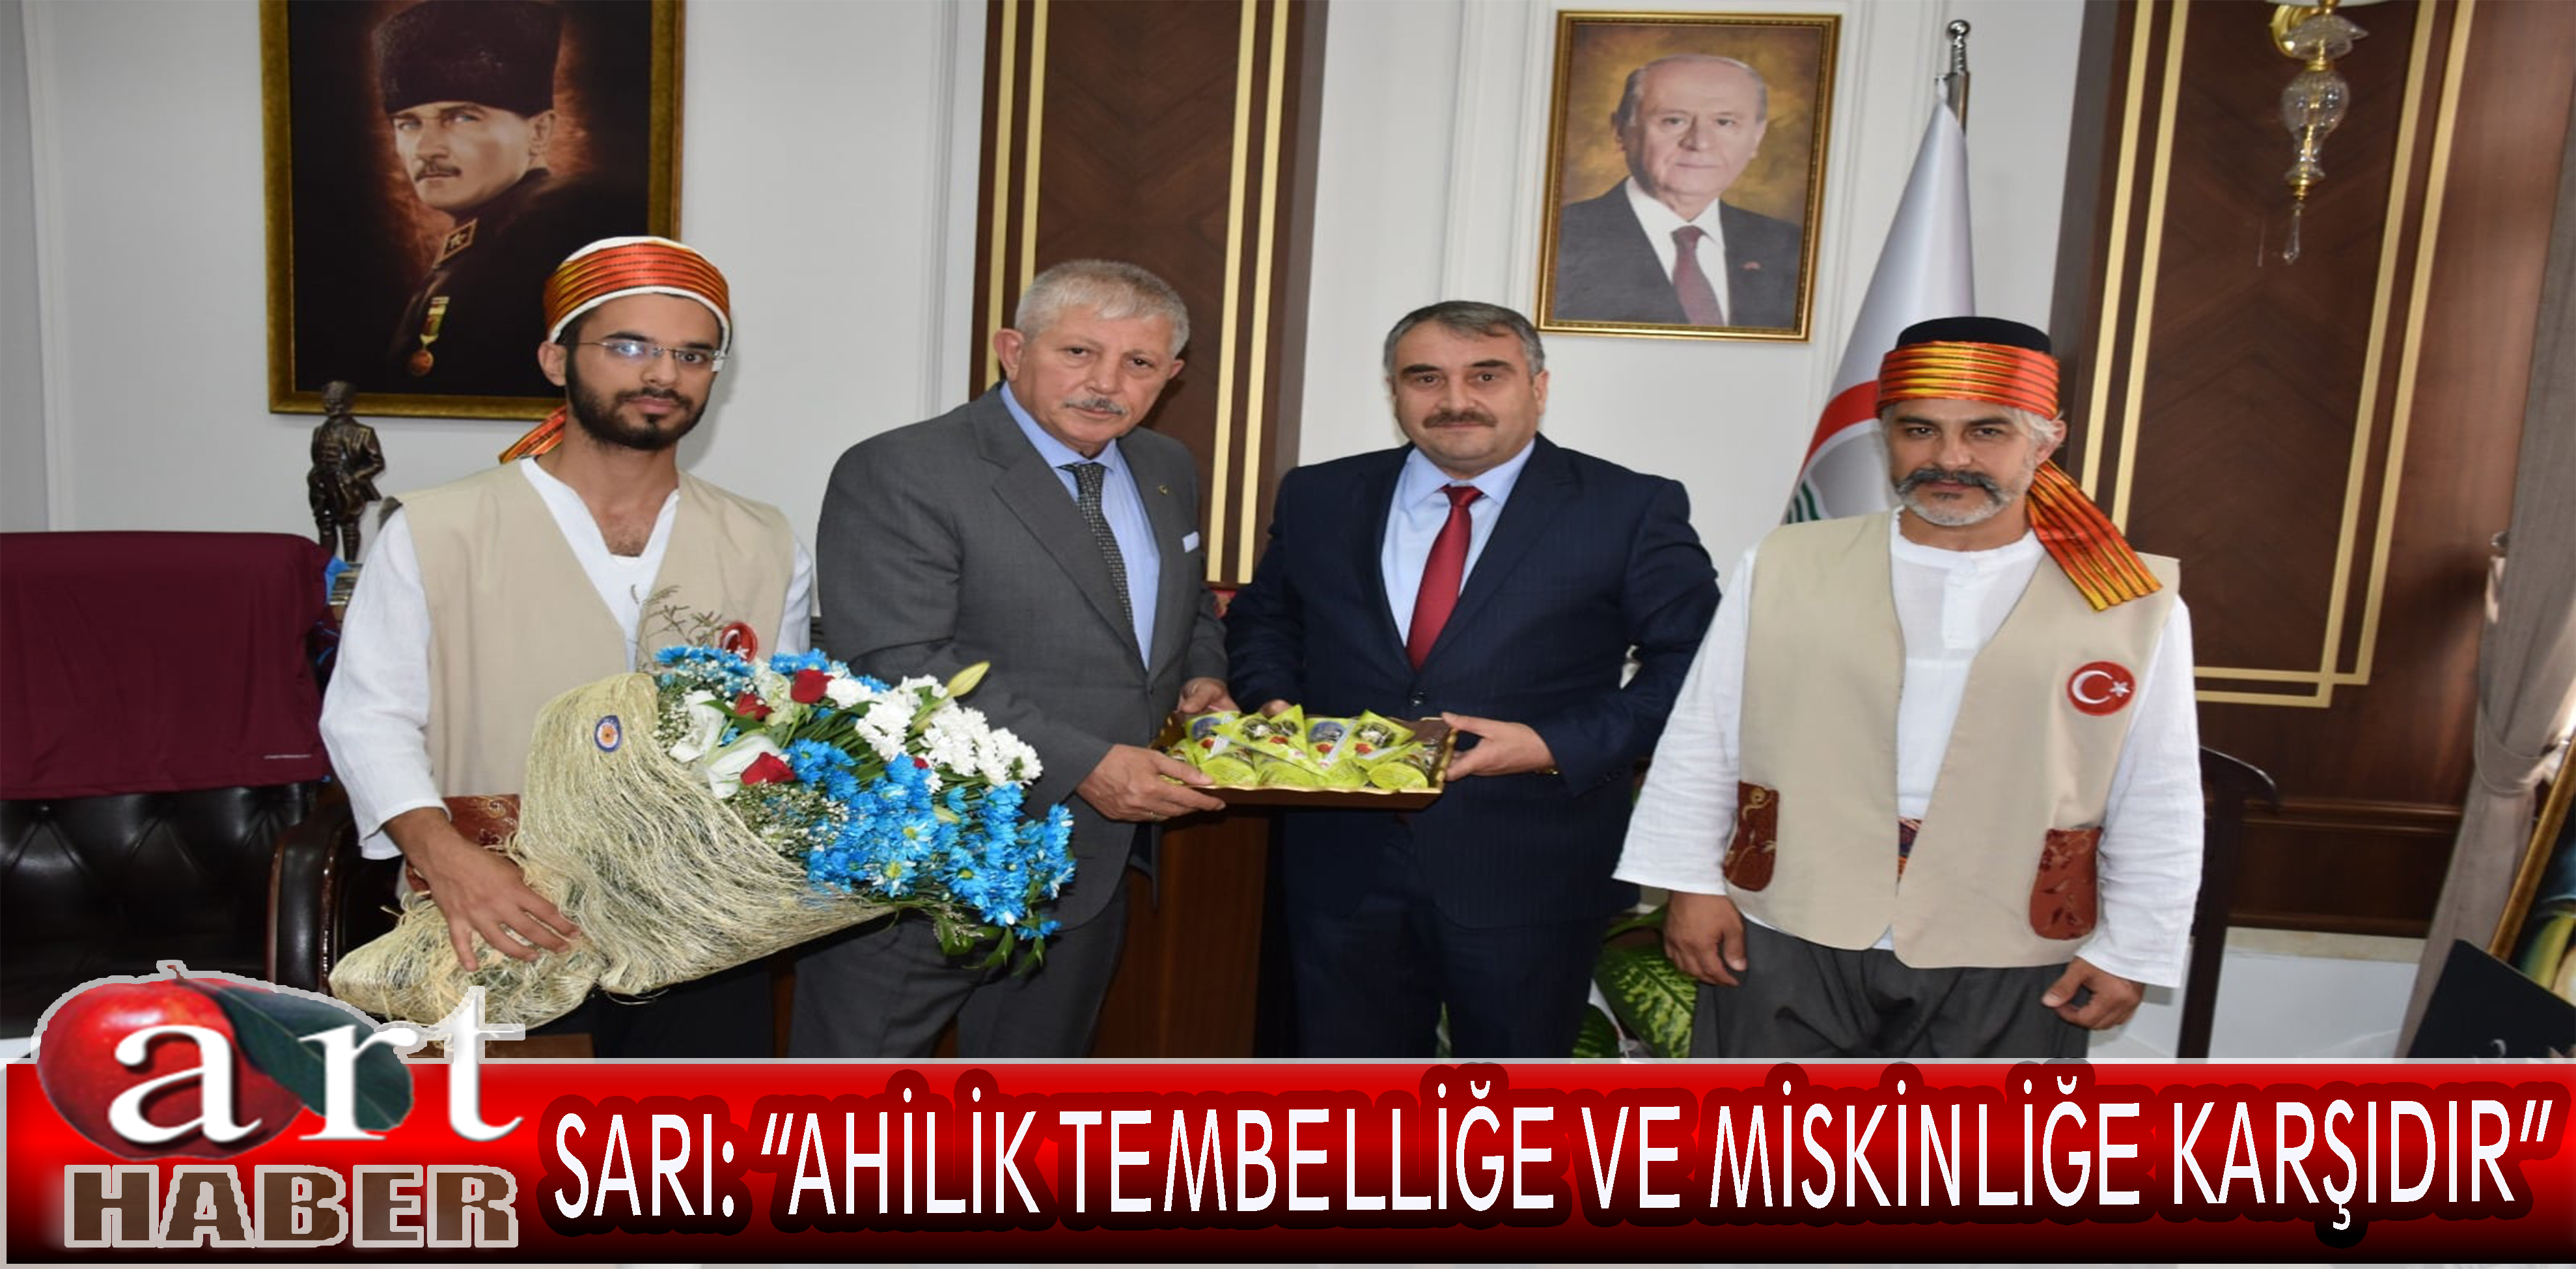 Amasya Belediye Başkanı Mehmet Sarı, Ahilik Haftası nedeniyle bir kutlama mesajı yayımladı.